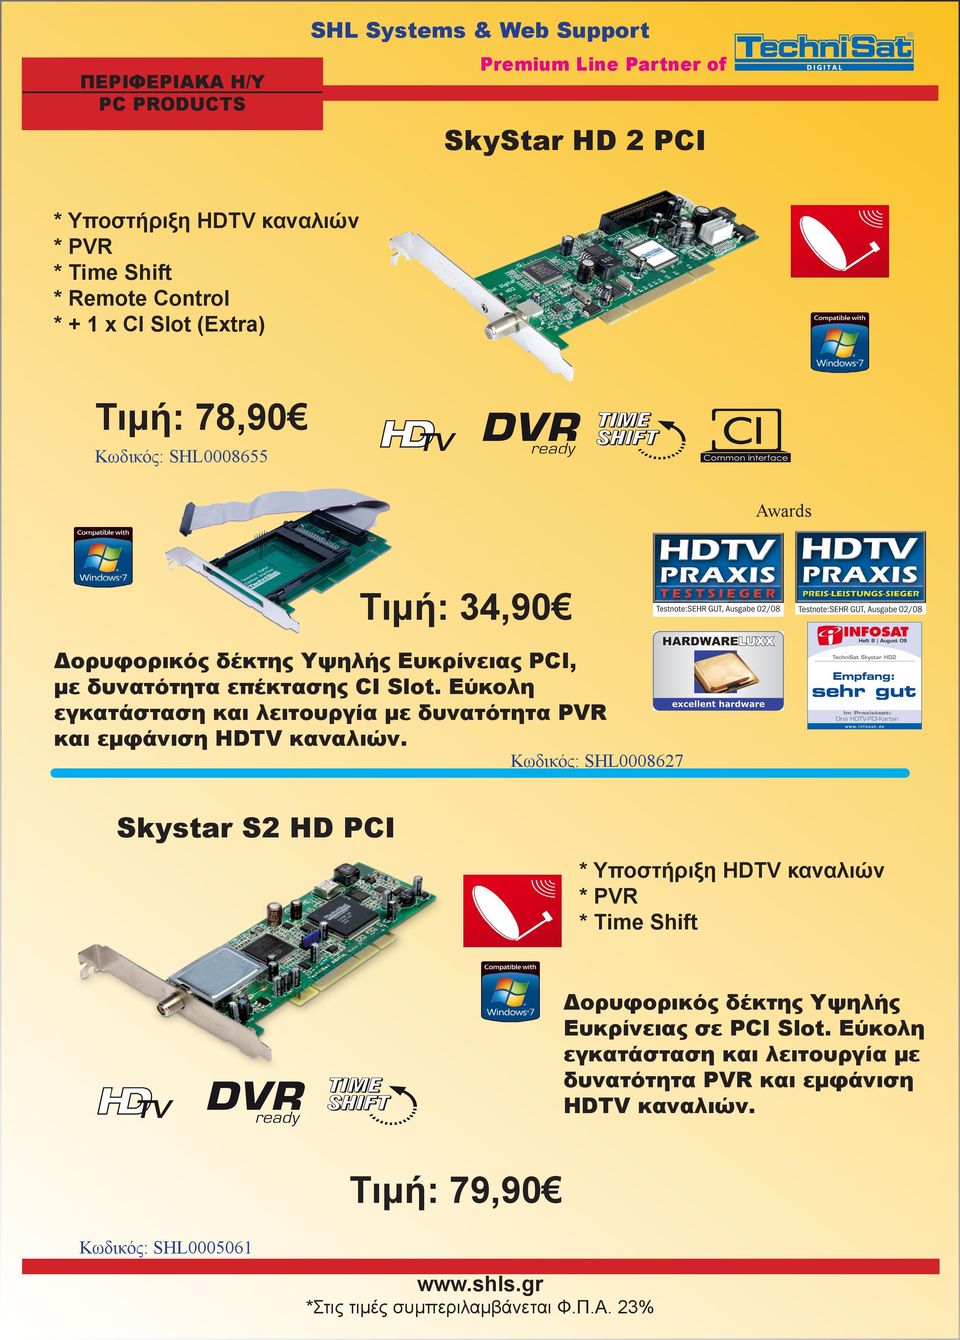 Εύκολη εγκατάσταση και λειτουργία με δυνατότητα PVR και εμφάνιση HDTV καναλιών.